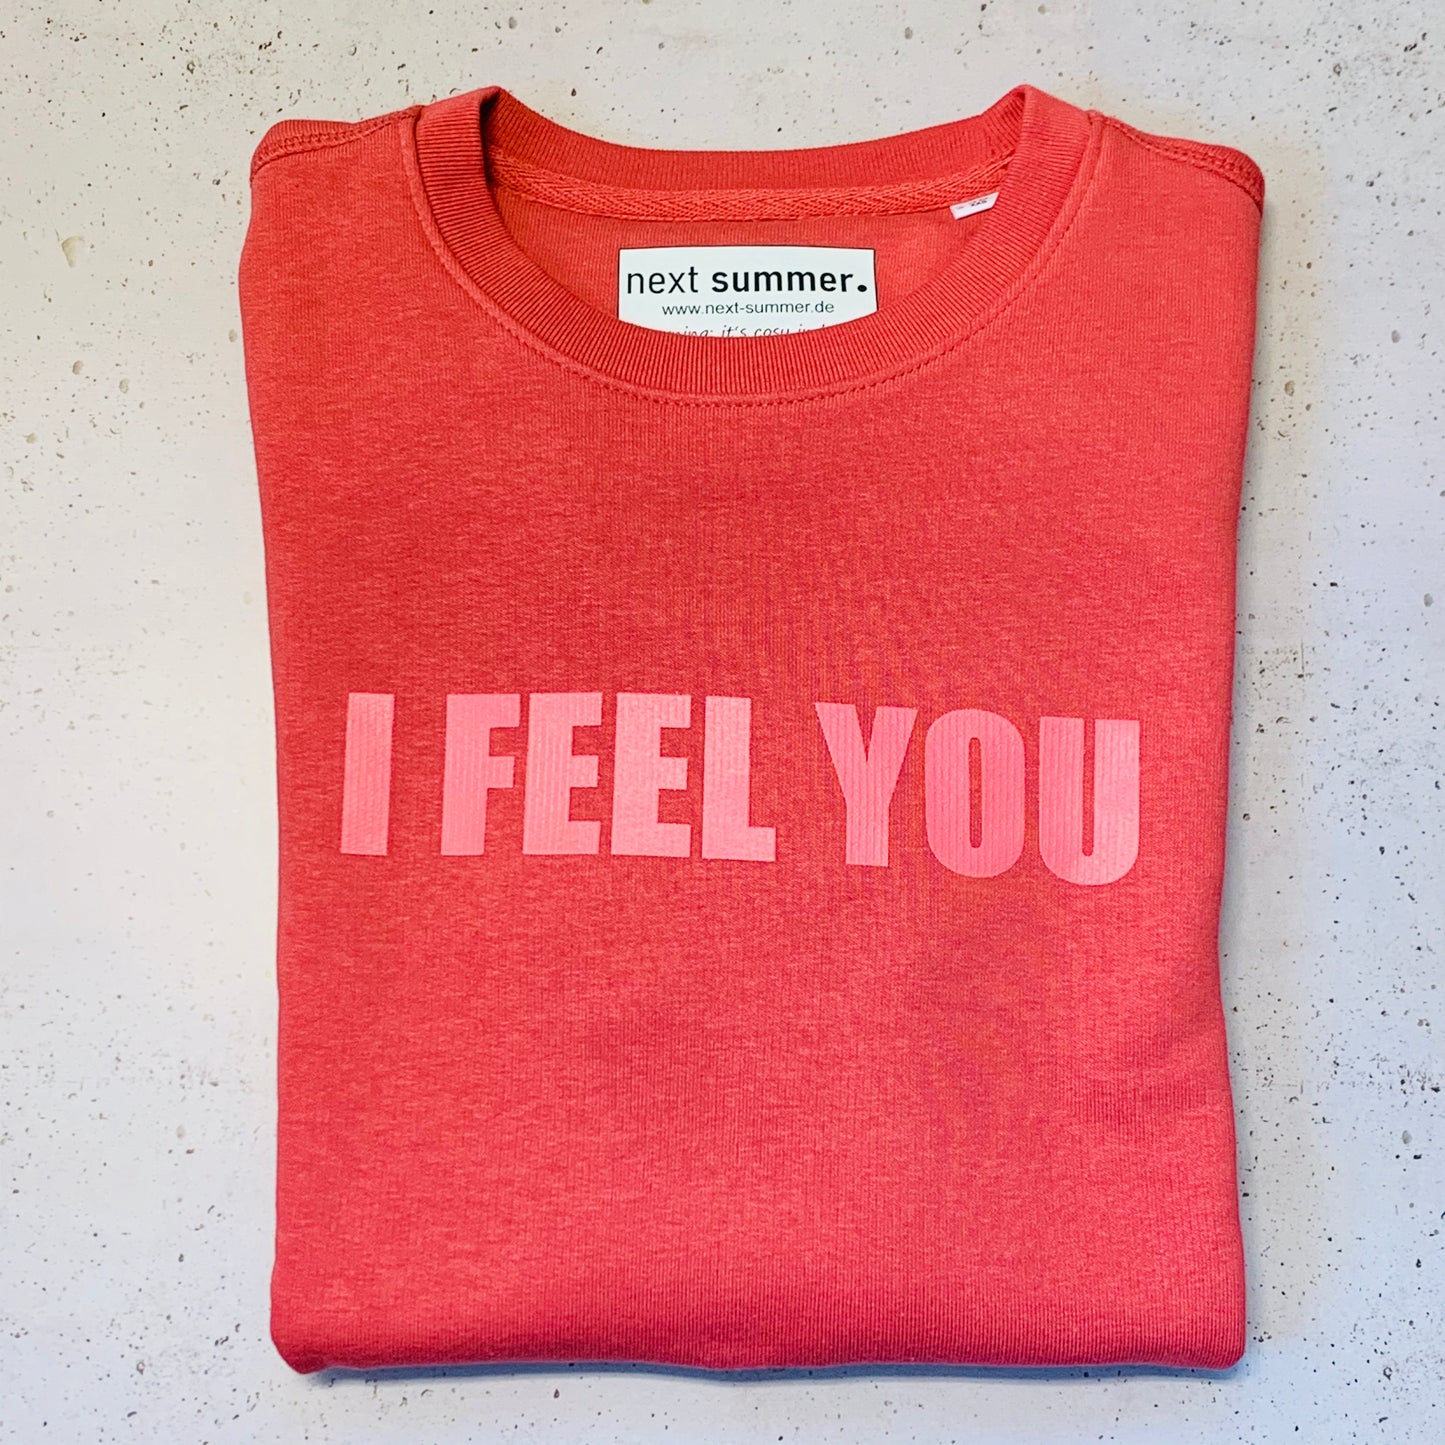 Unser roter Sweater mit Print I FEEL YOU in lässiger Passform. Perfekte Home und Street Wear. next summer fashion. 